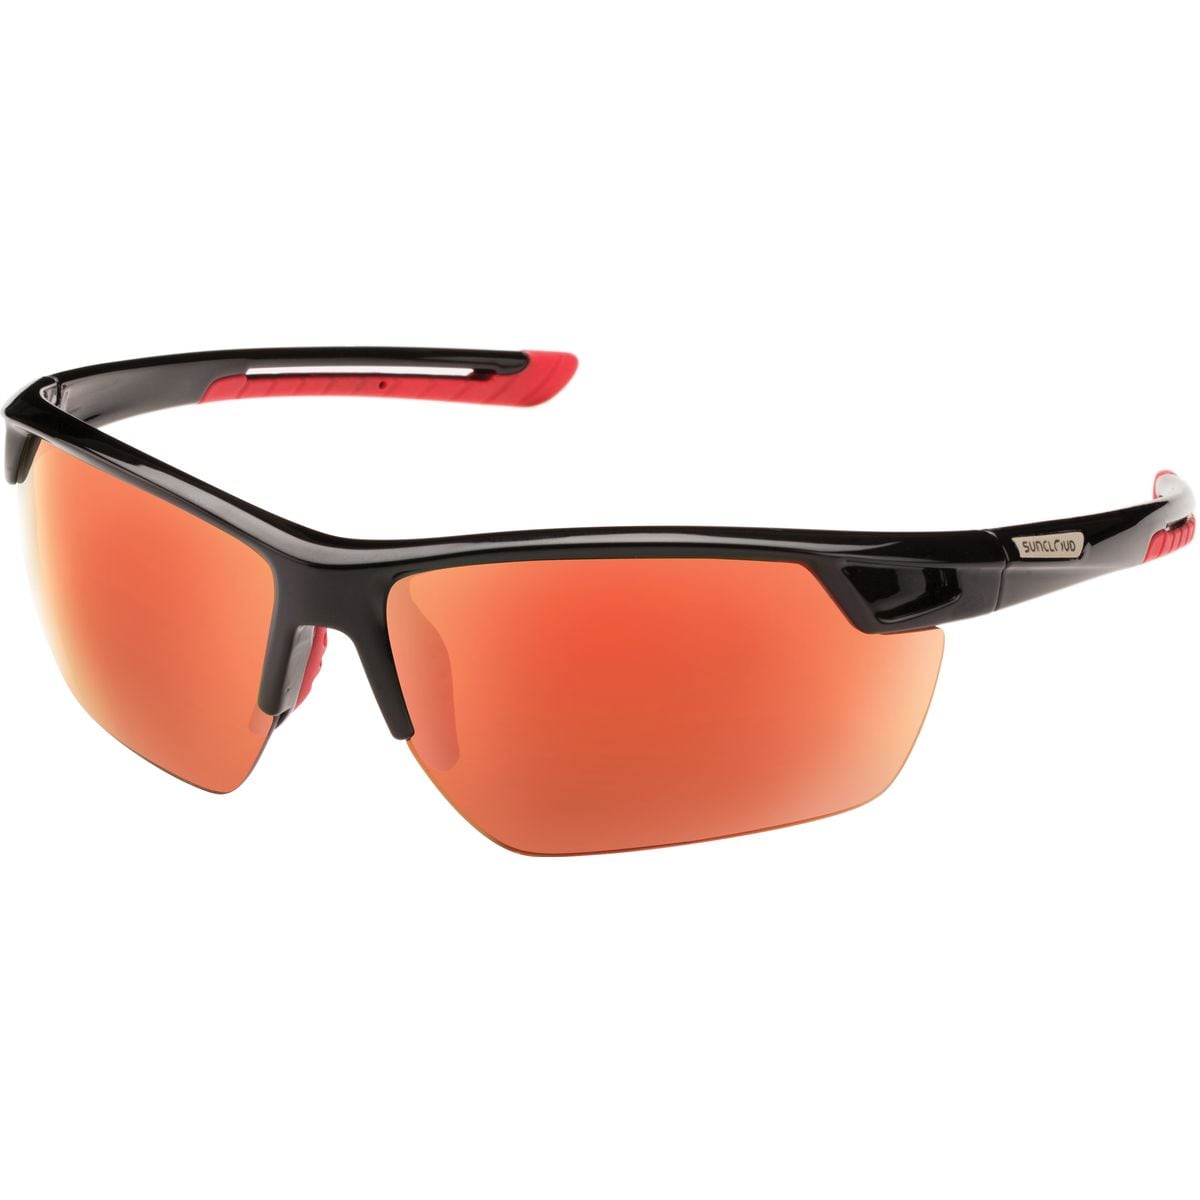 Поляризованные солнцезащитные очки contender Suncloud Polarized Optics, цвет black/red mirror очки солнцезащитные stylemark polarized l1454a